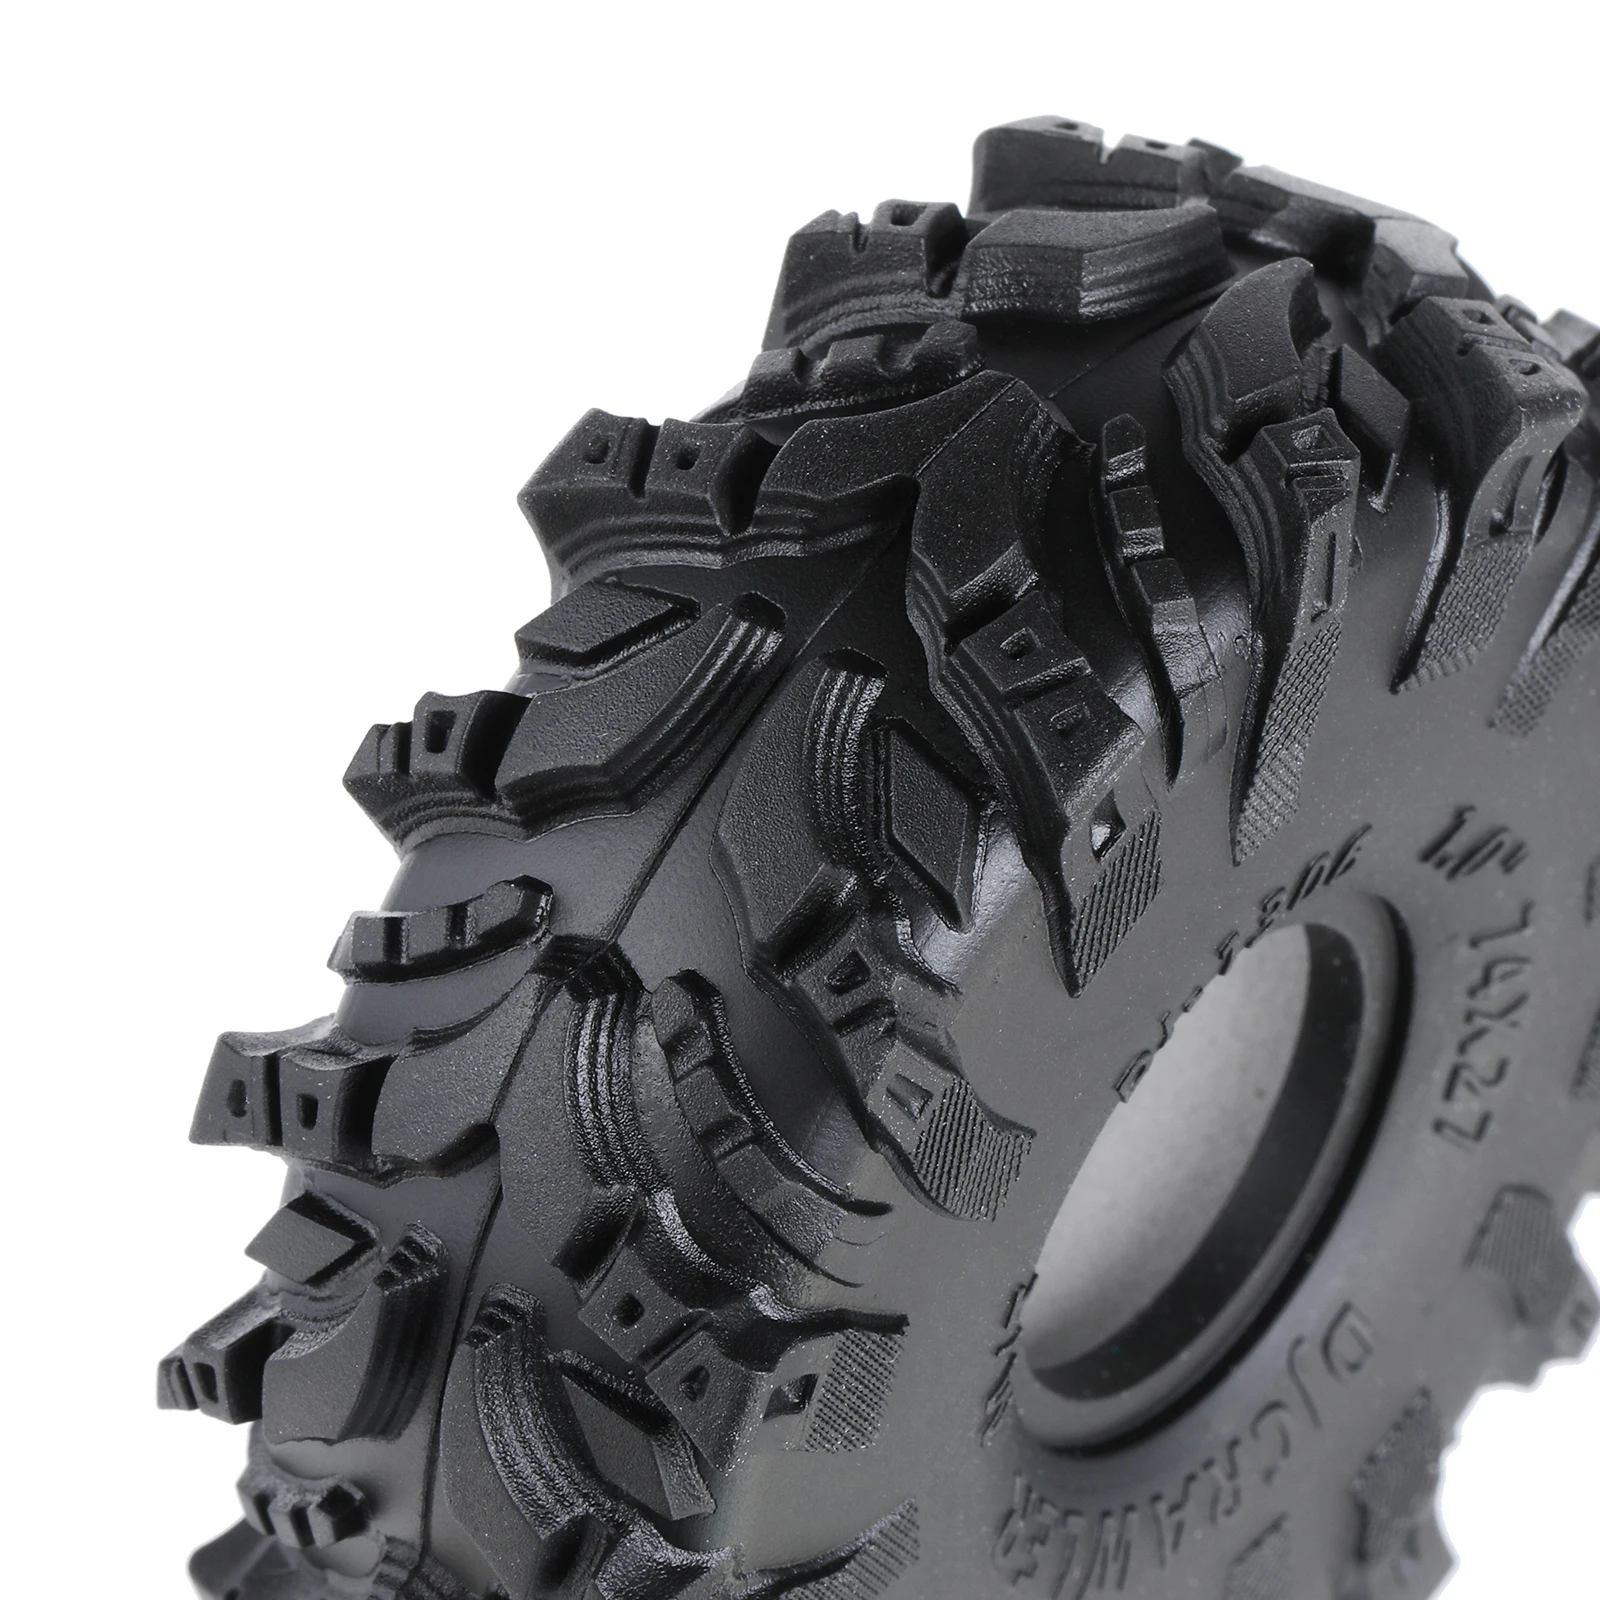 1-0-Mud-Tires-74-27mm-Super-Large-Soft-Sticky-Tires-for-TRX4M-1-18-1.webp